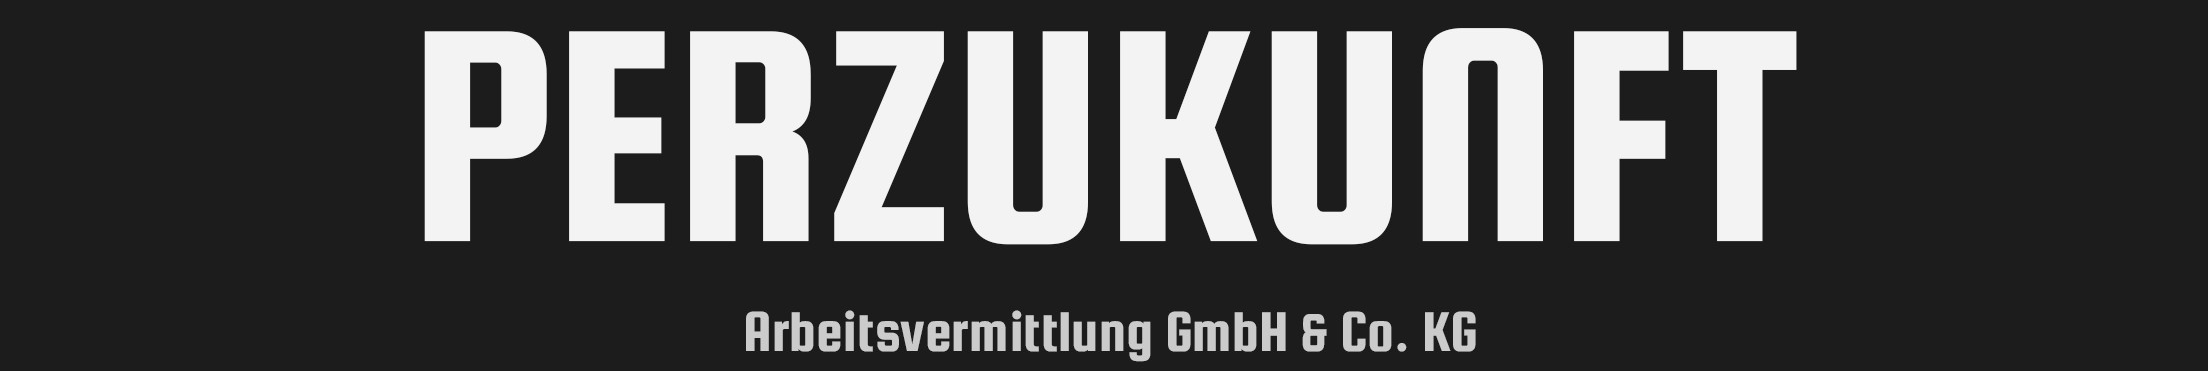 PerZukunft Arbeitsvermittlung GmbH & Co. KG background